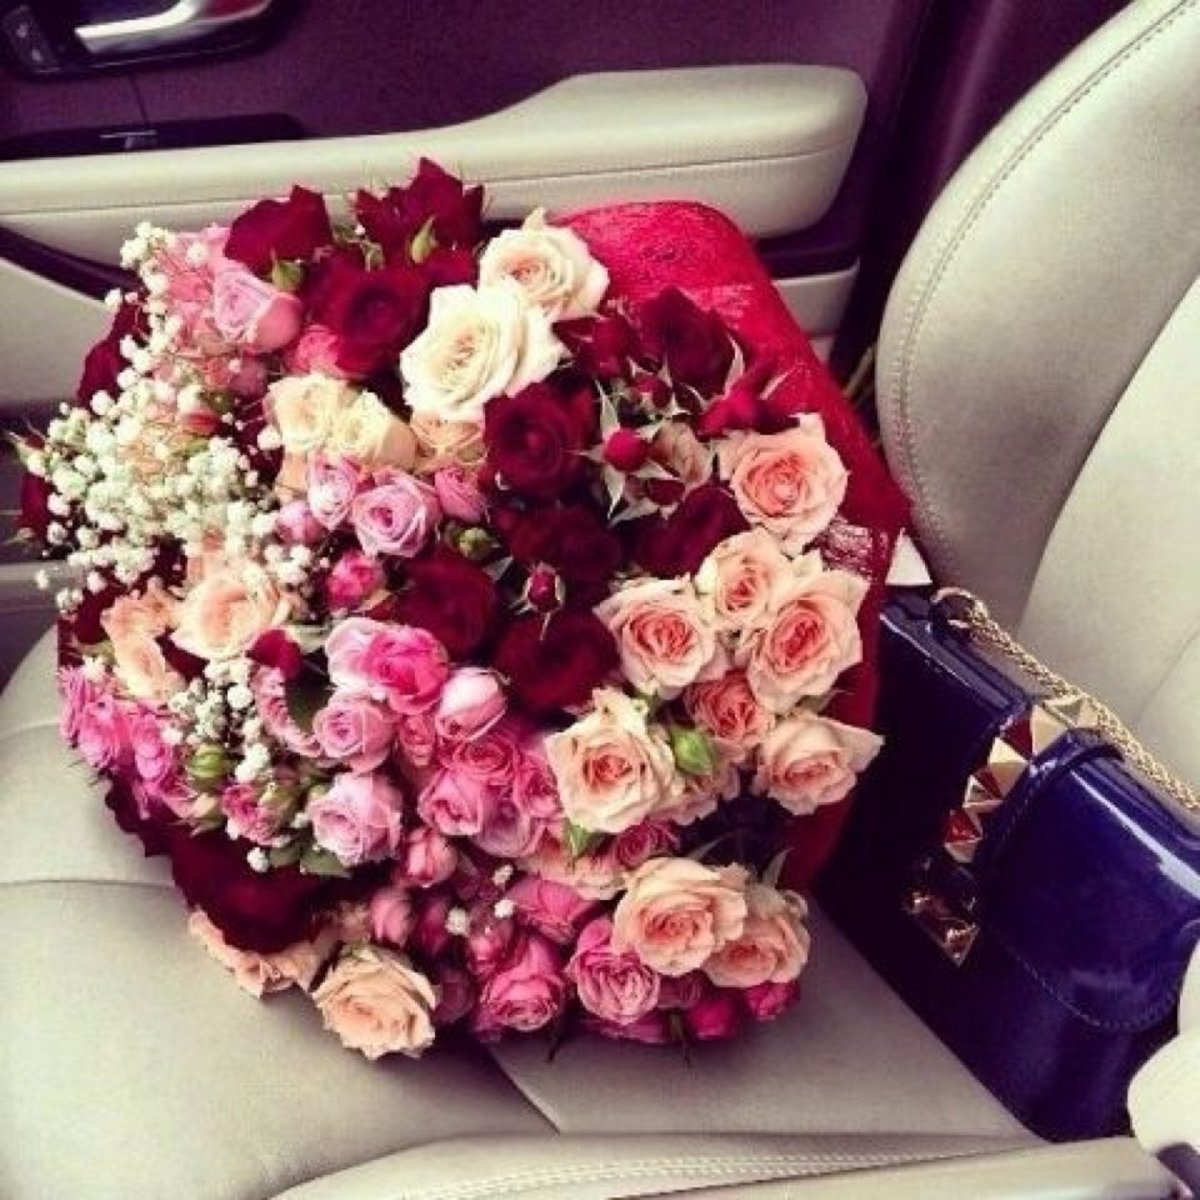 Фото на аву цветы в машине на